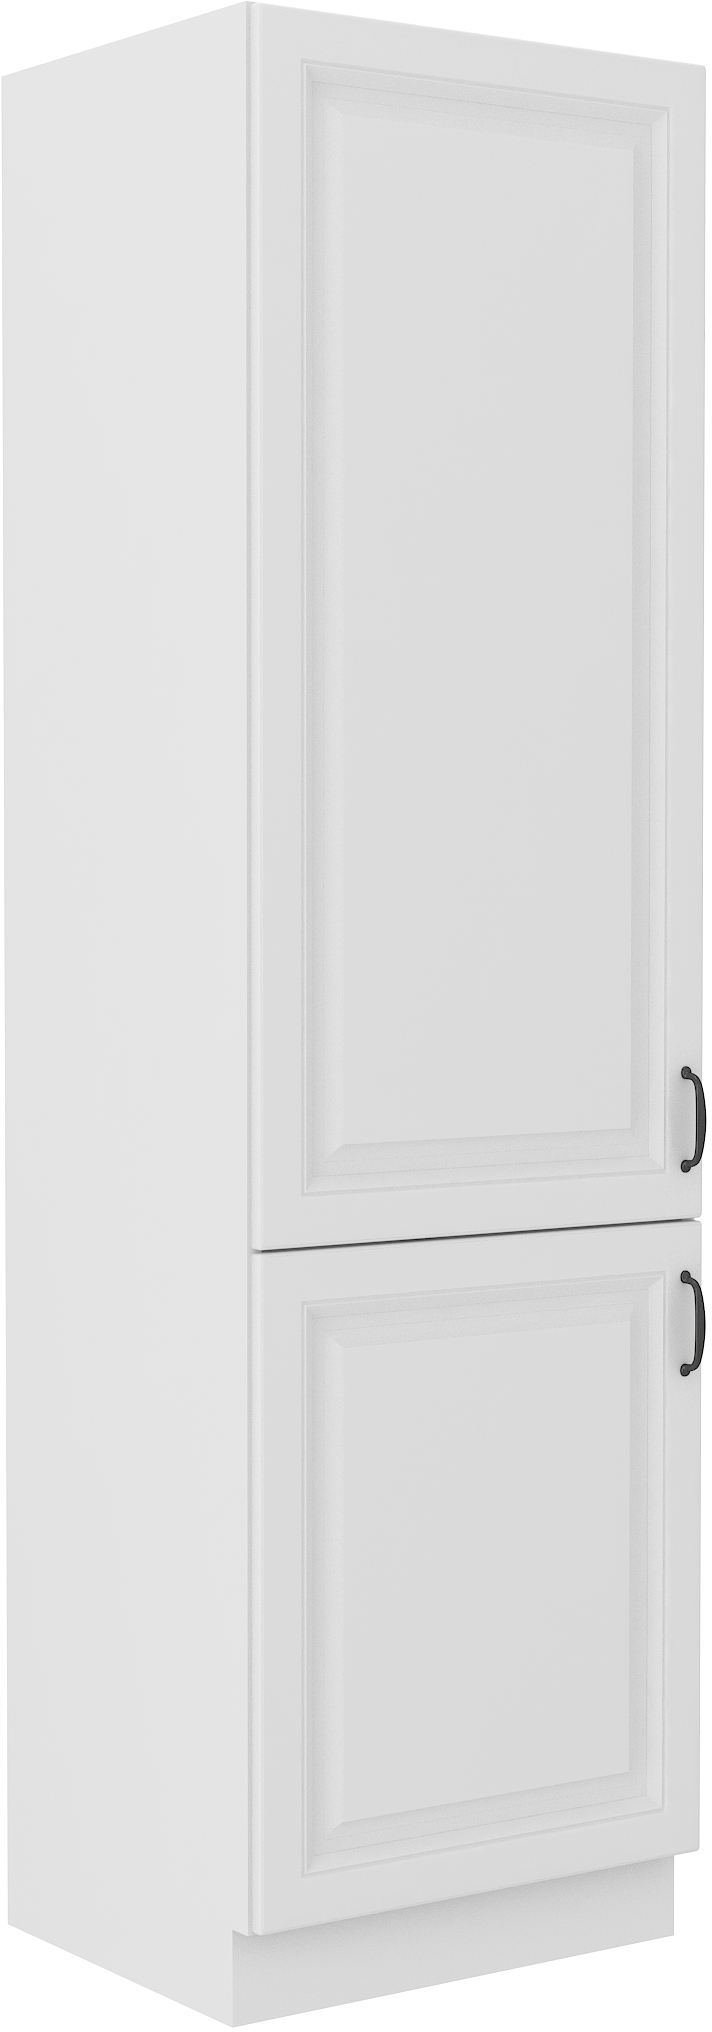 Vysoká potravinová skříňka Stilo 60 DK-210 2F Barva korpusu: Bílá, Barva dvířek: Bílá - Bílá,Bílá,bí